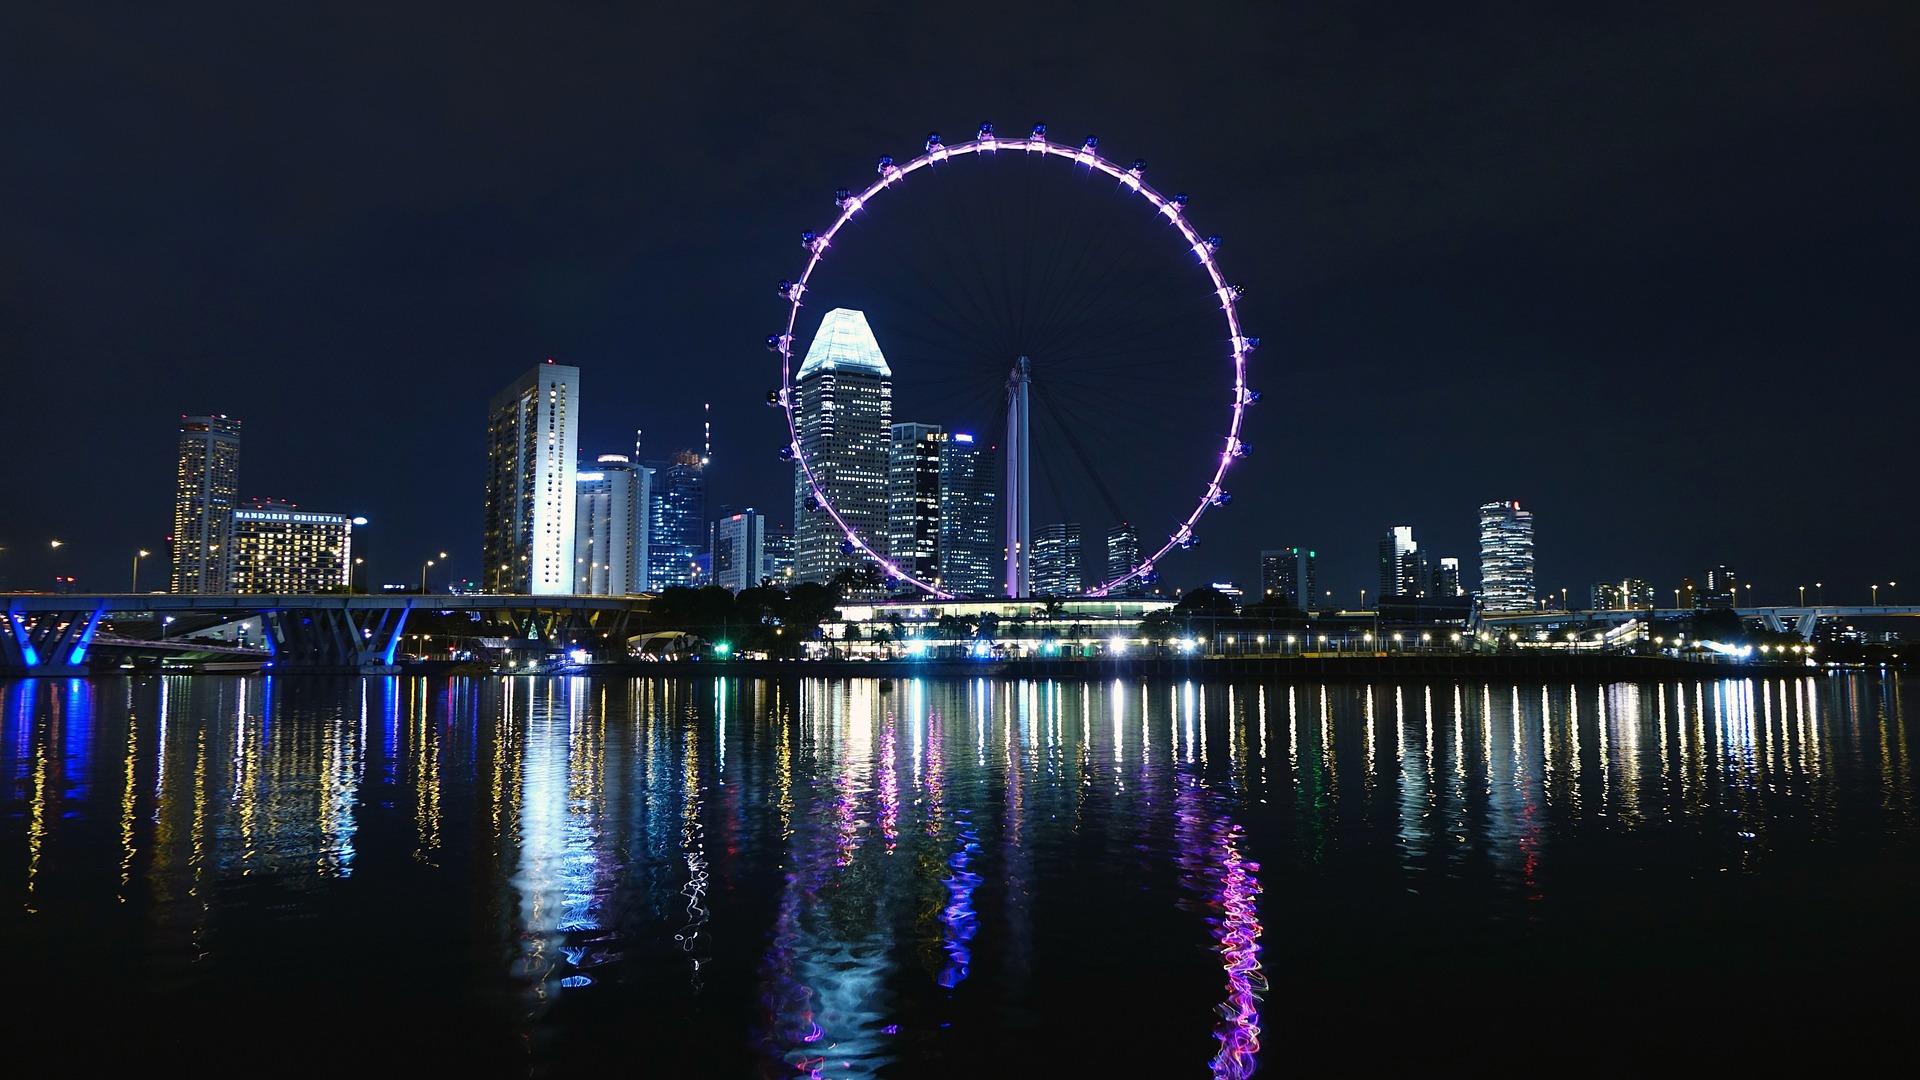 أفضل الأماكن السياحية في سنغافورة التي تستحق الزيارة - ترافيل ديف - TravelDiv